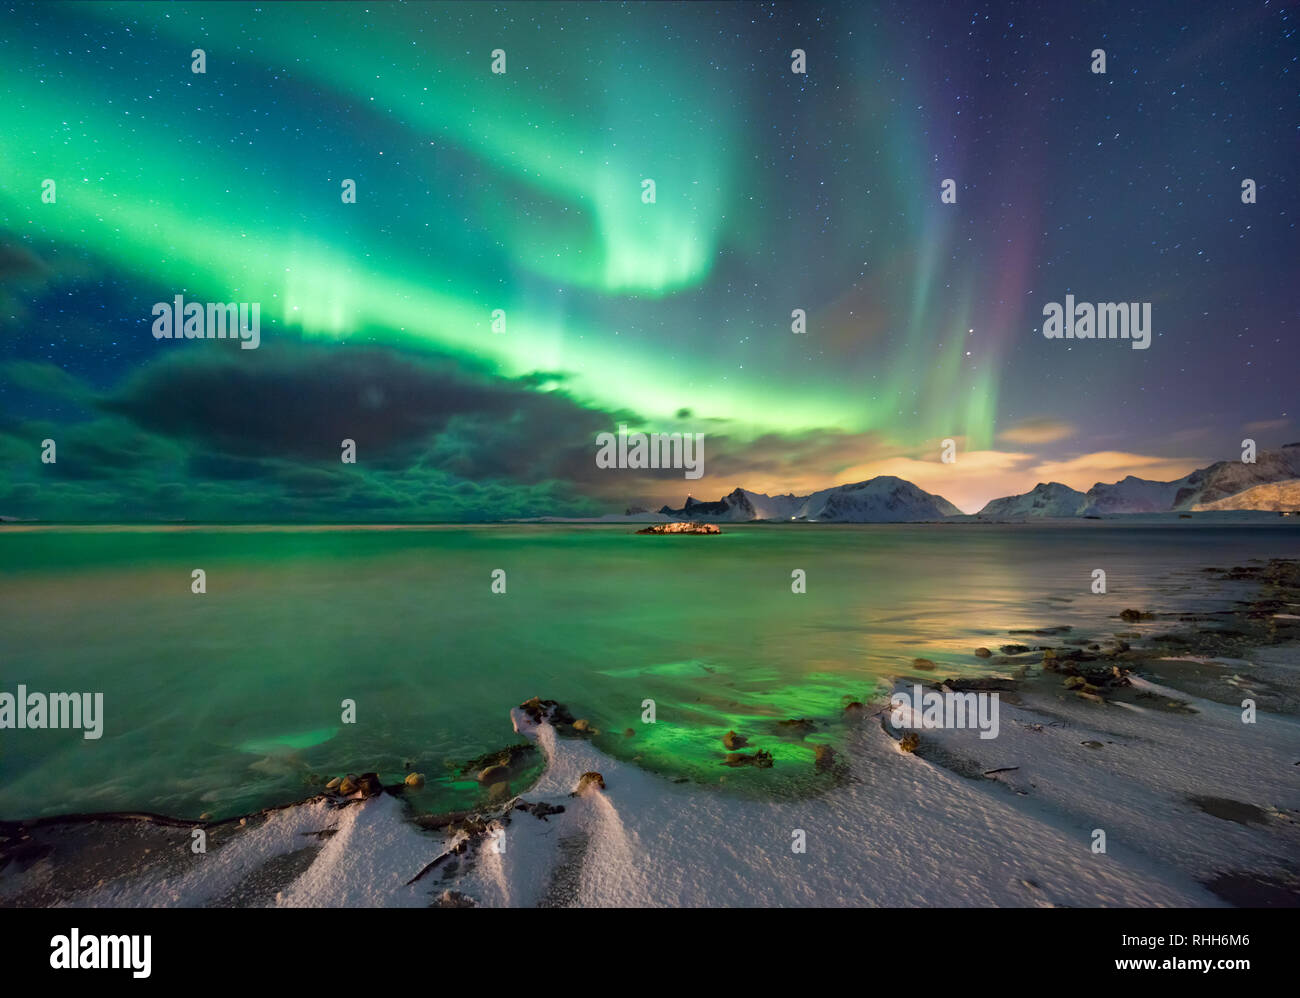 Vera magia di luci del nord - fiordo norvegese con montagne e neve, colore riflessioni sulle onde del mare. Paesaggio invernale, natura settentrionale Foto Stock